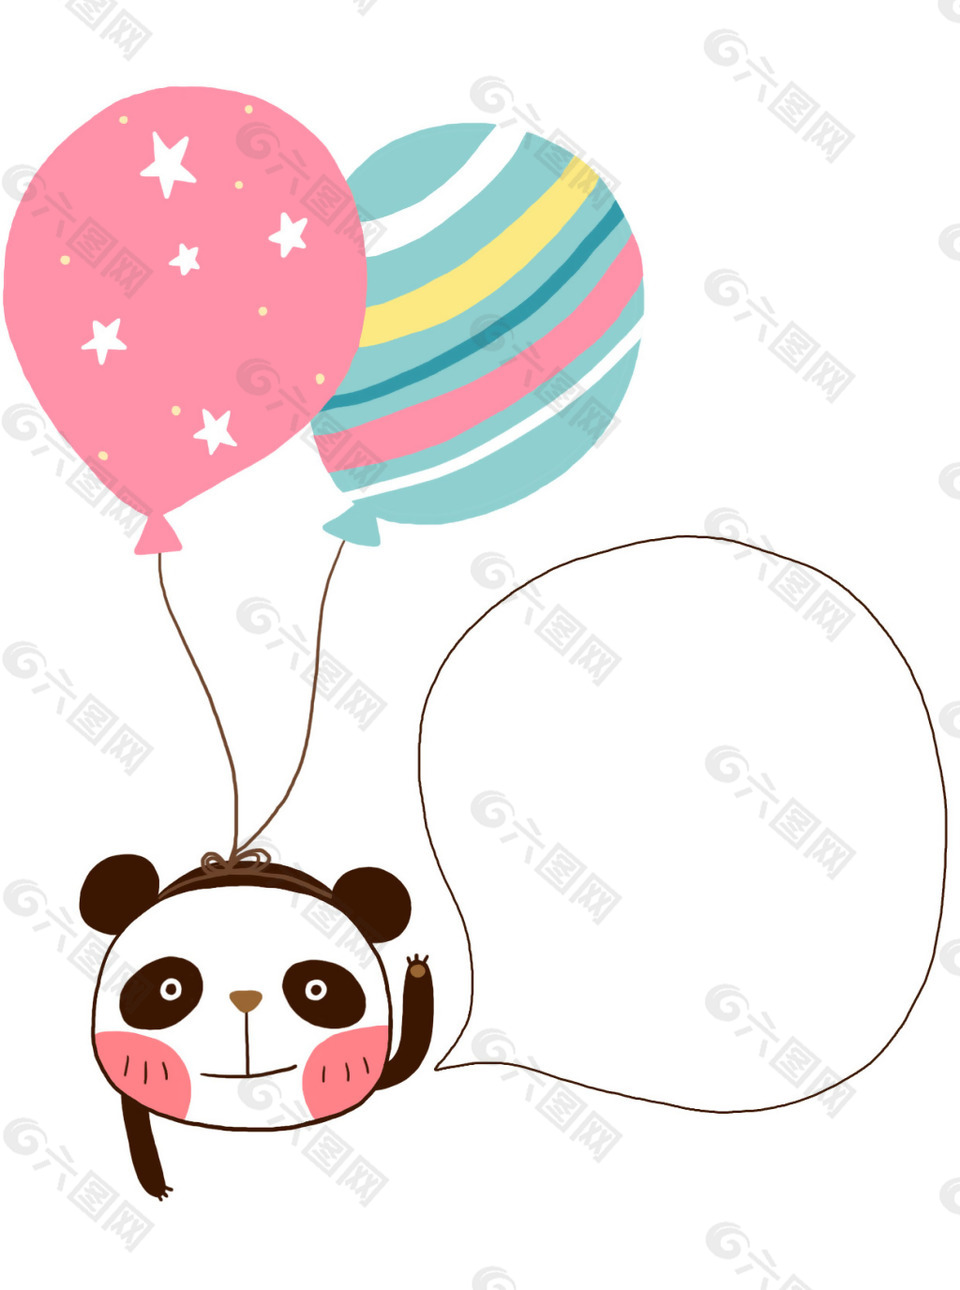 手绘熊猫气球元素